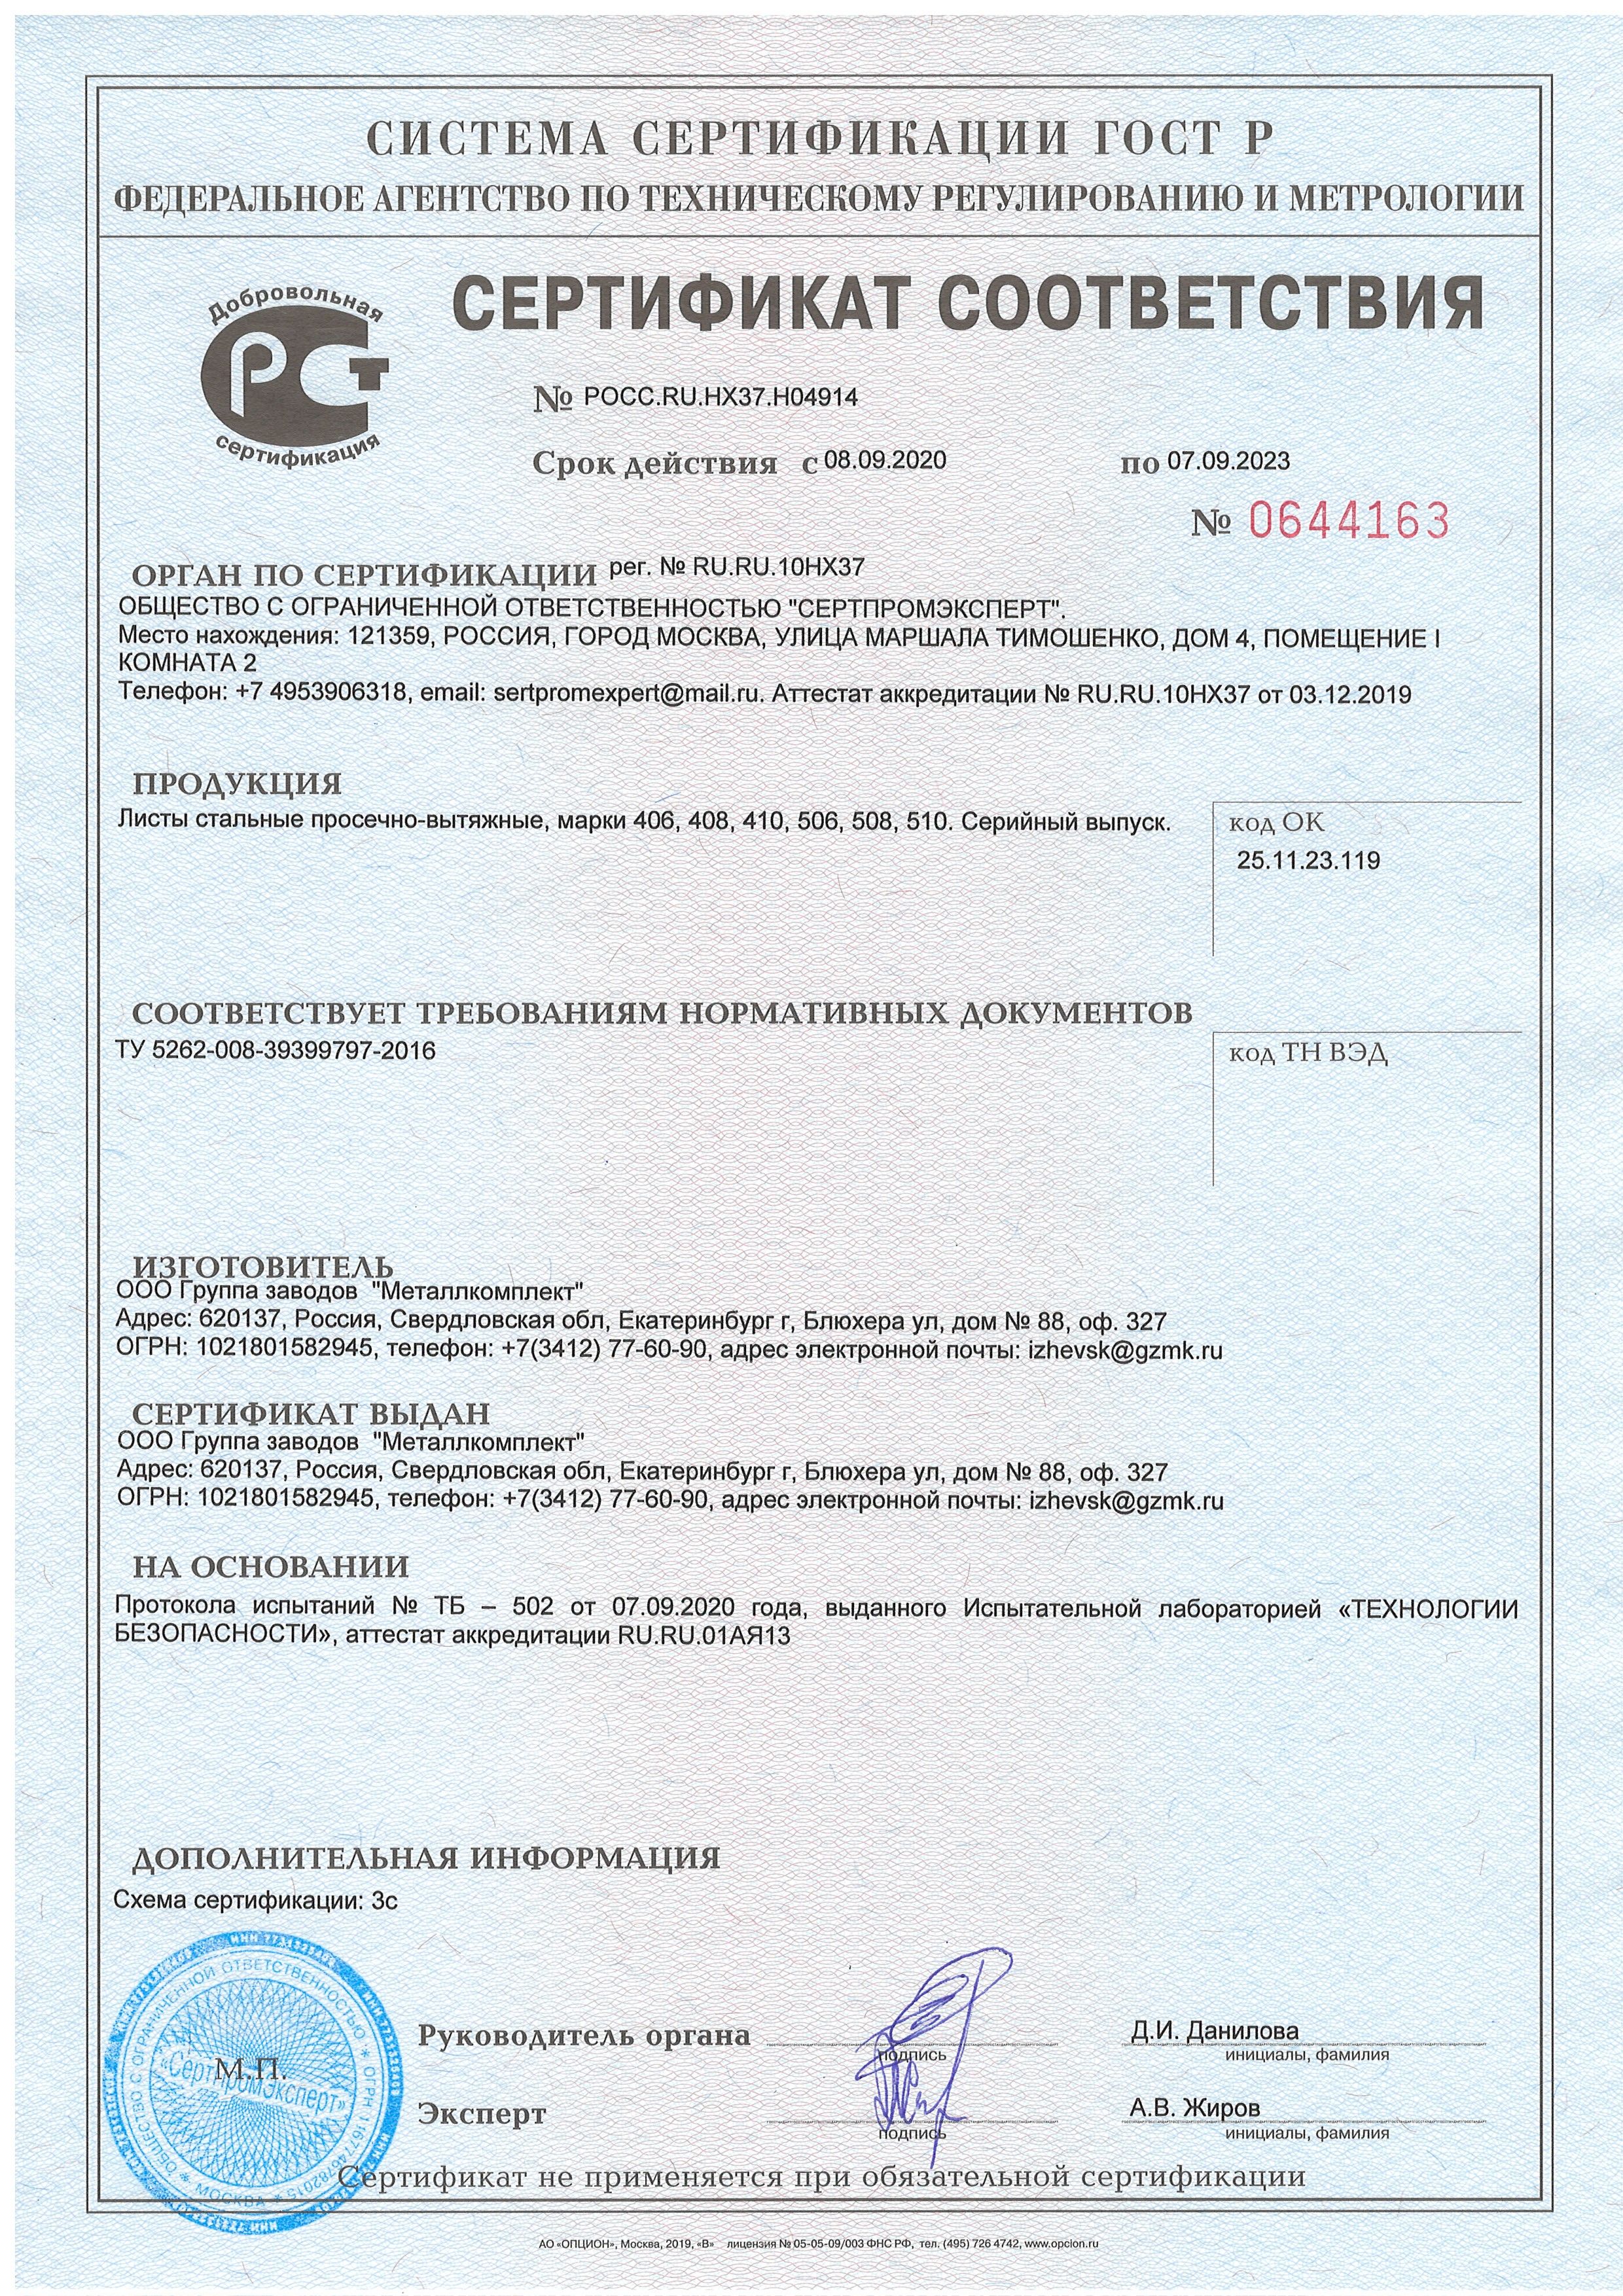 Сертификат соответствия - ПВЛ